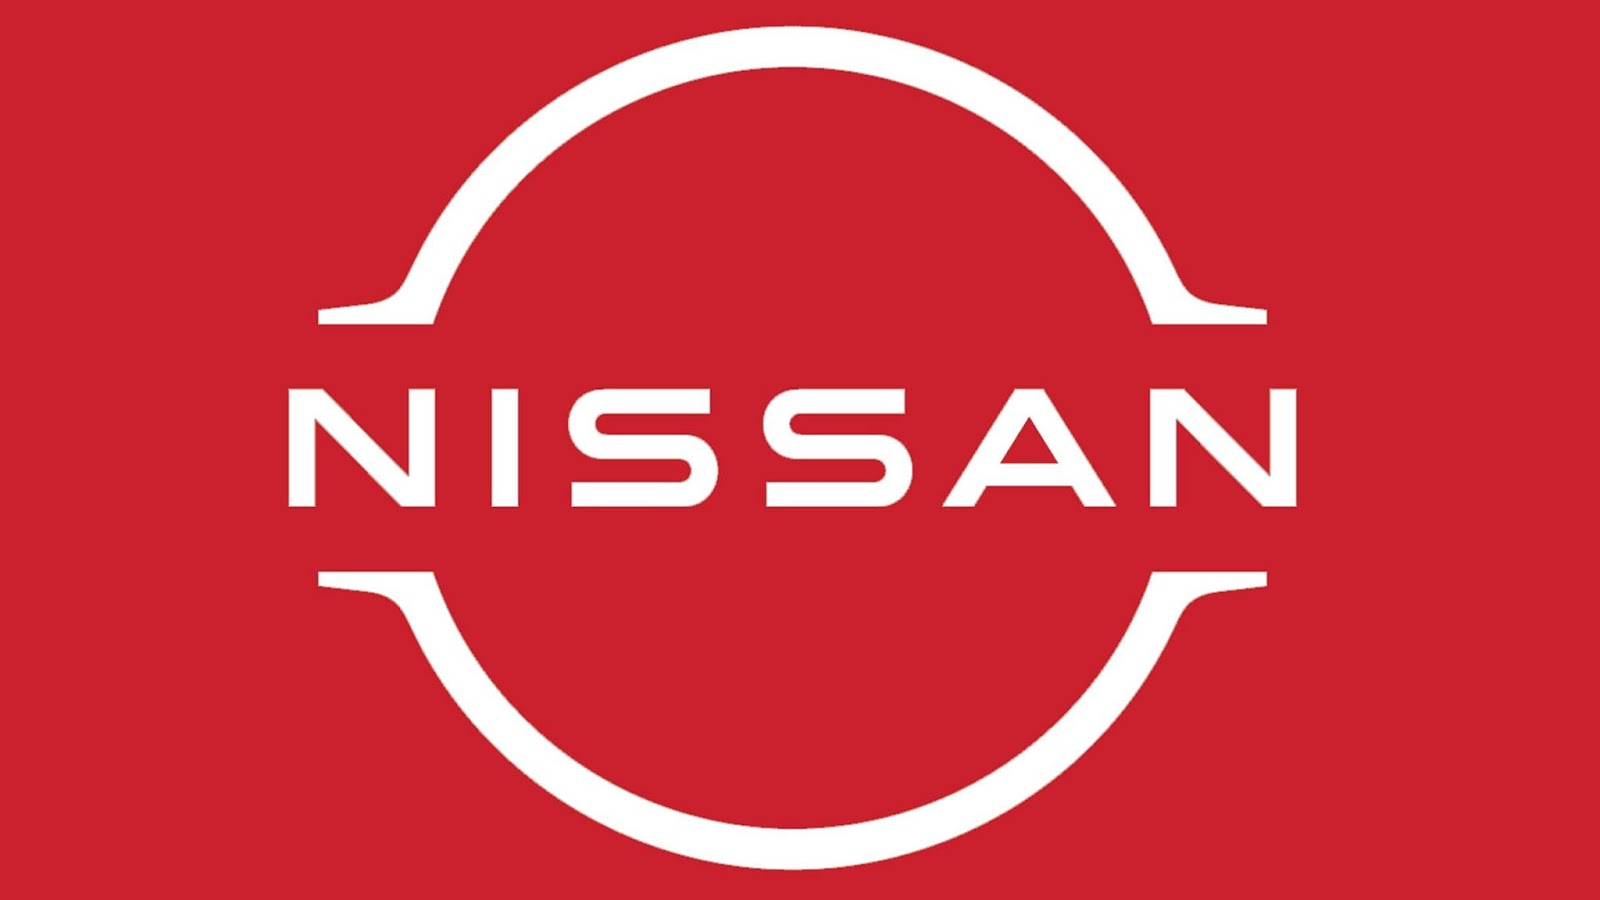 Nissan Komunikasikan Visi Inovatif Dengan Logo Flat Design Terbaru